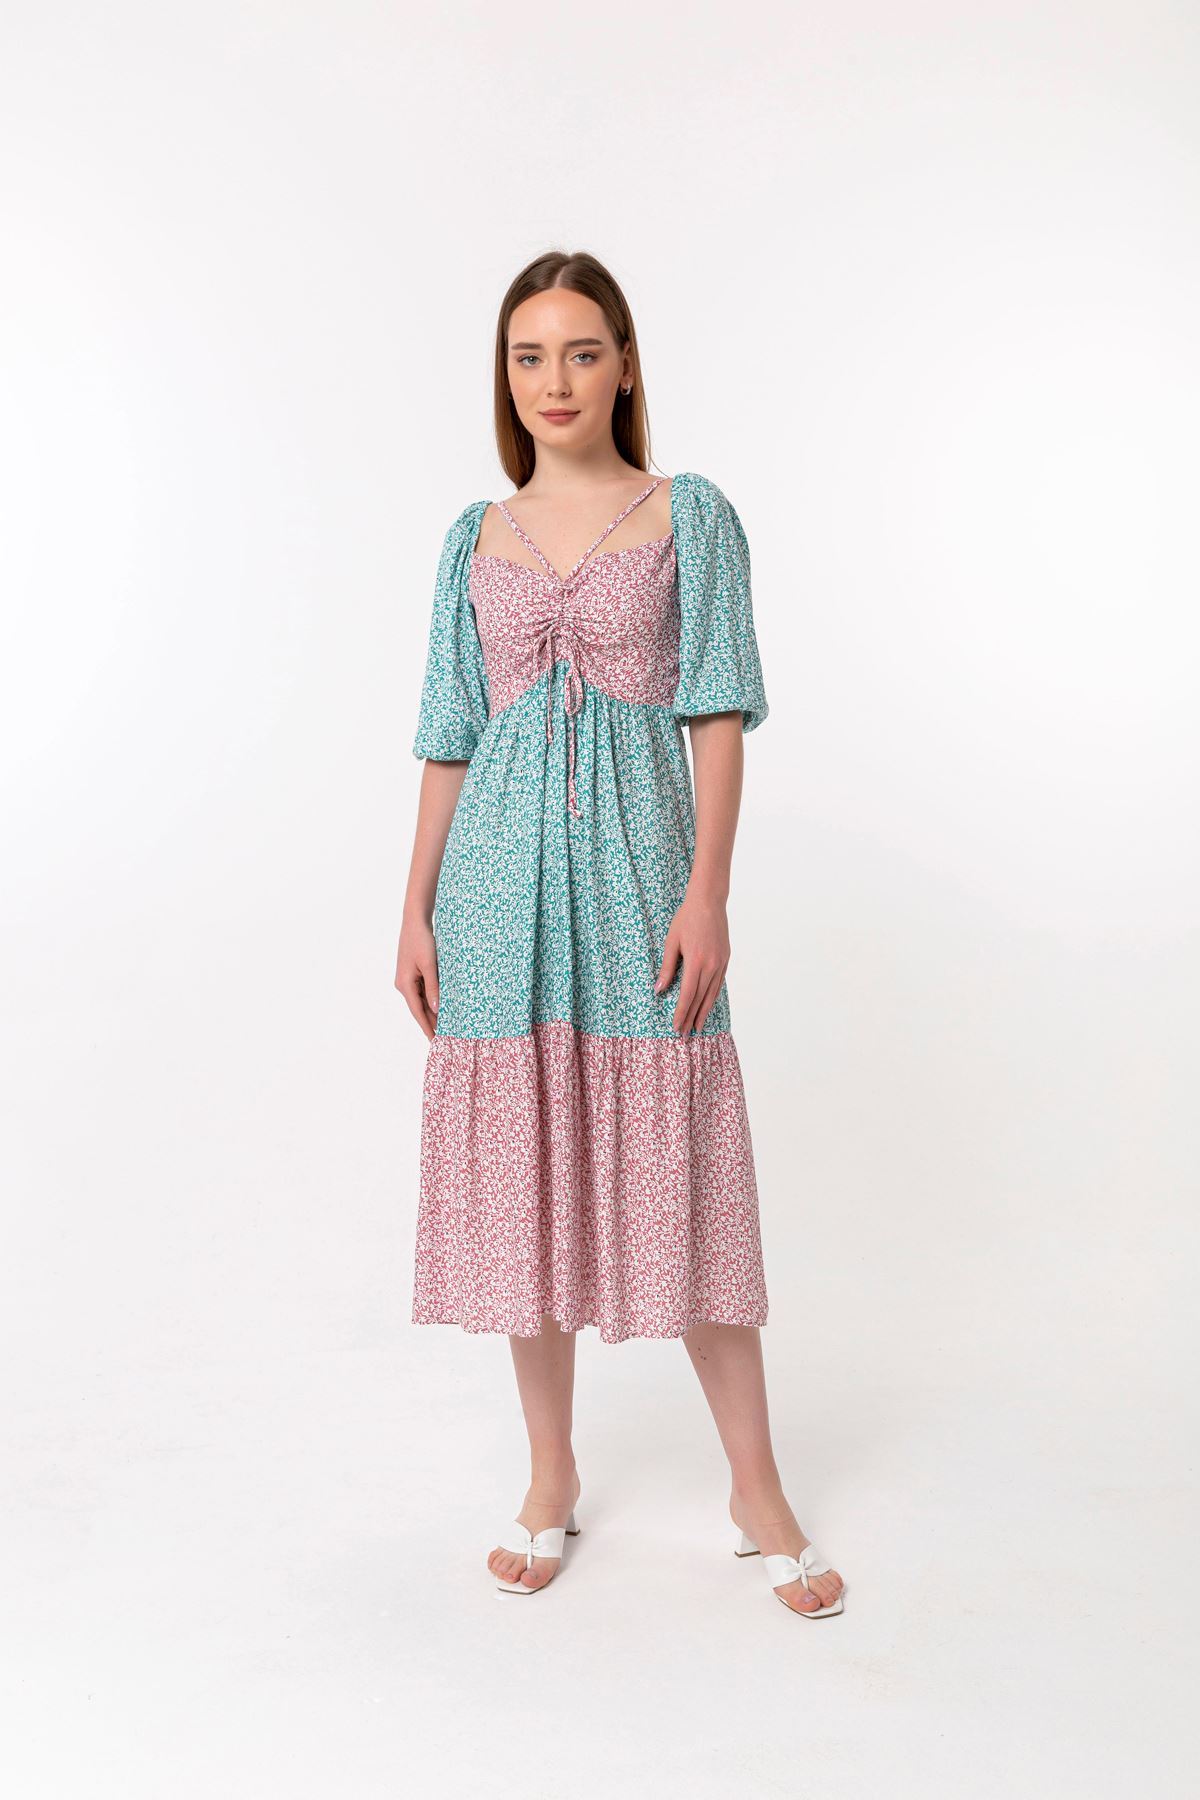 Viscose Fabric Short Sleeve Tie Neck Comfy Flower Print Women Dress - Mint